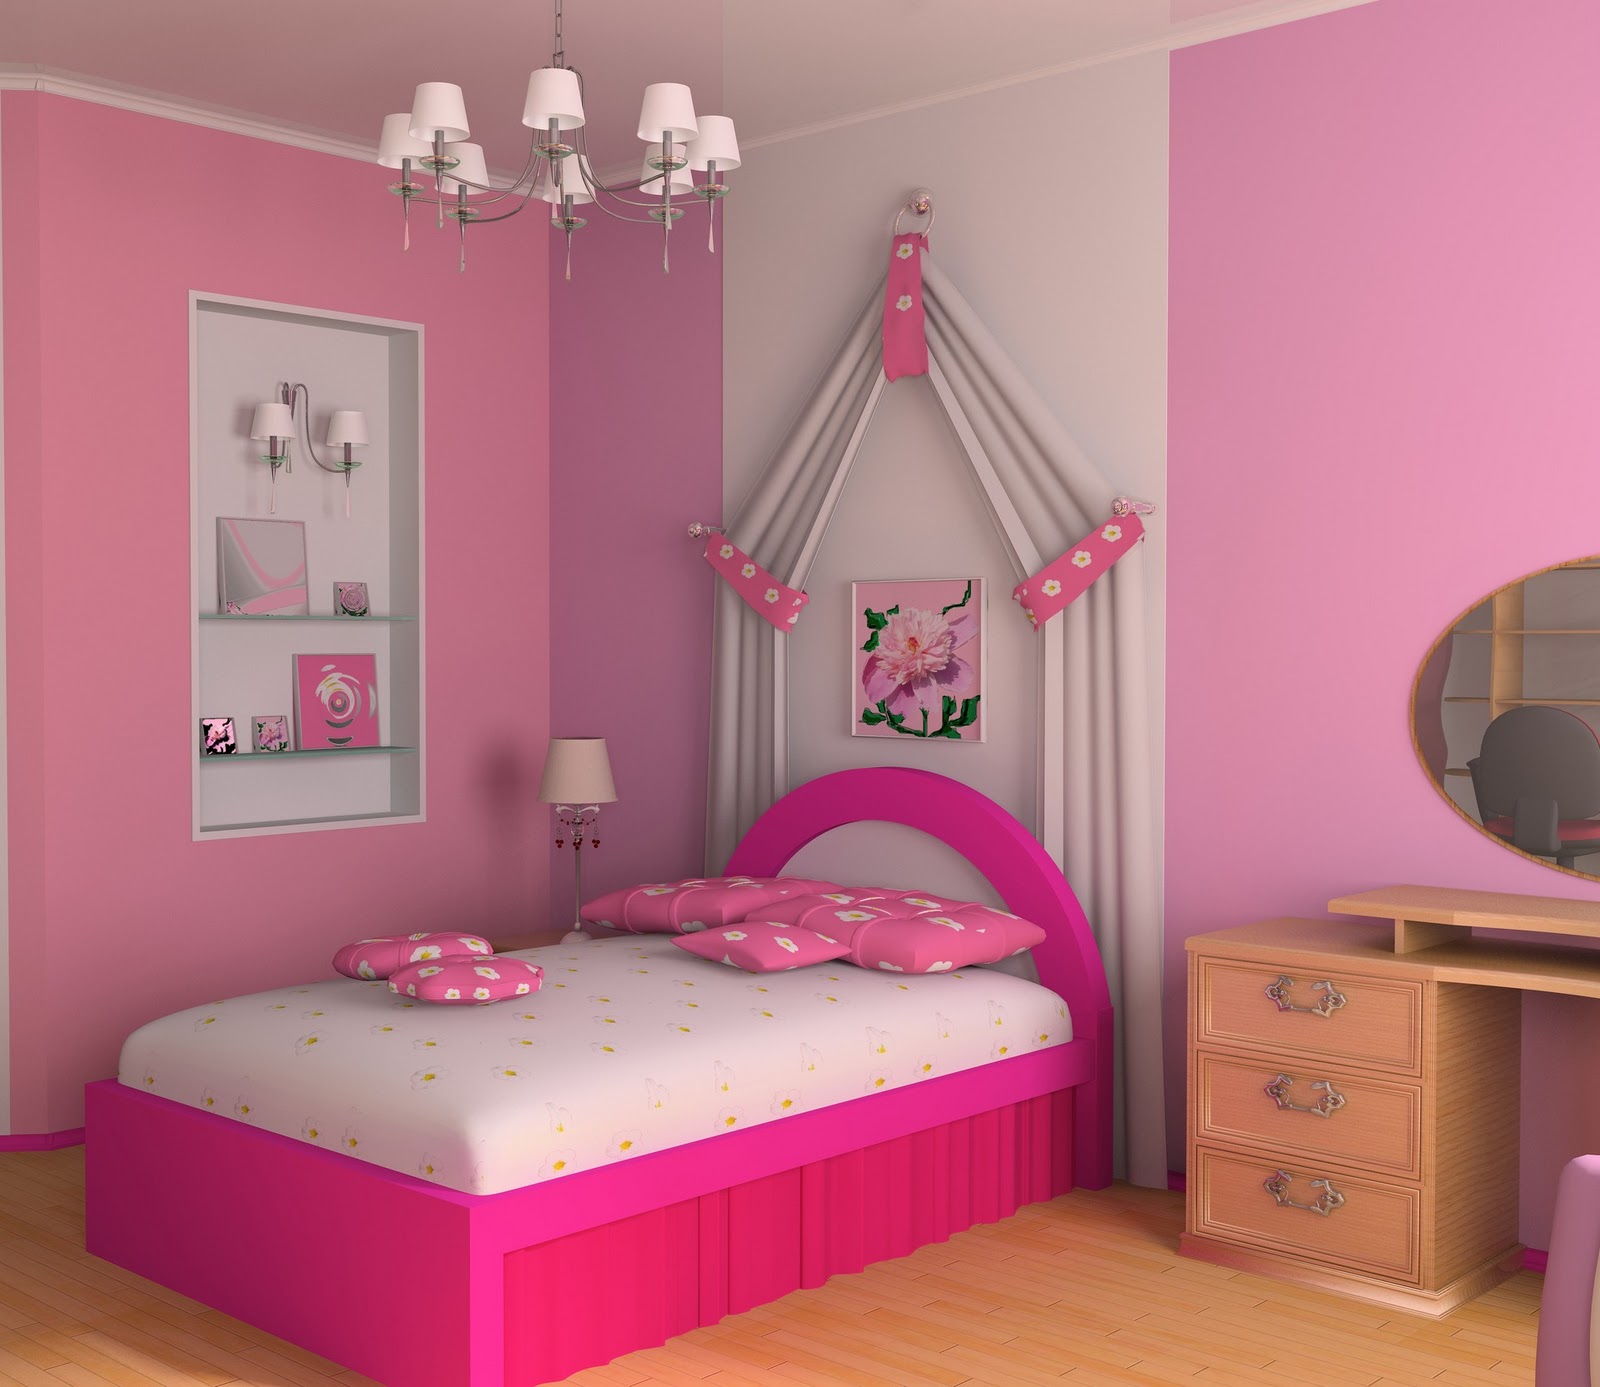 Сделай 1 розовым. Розовая комната для девочки. Розовая спальня для девочки. Самые красивые комнаты для девочек. Спальня для девочки в розовых тонах.